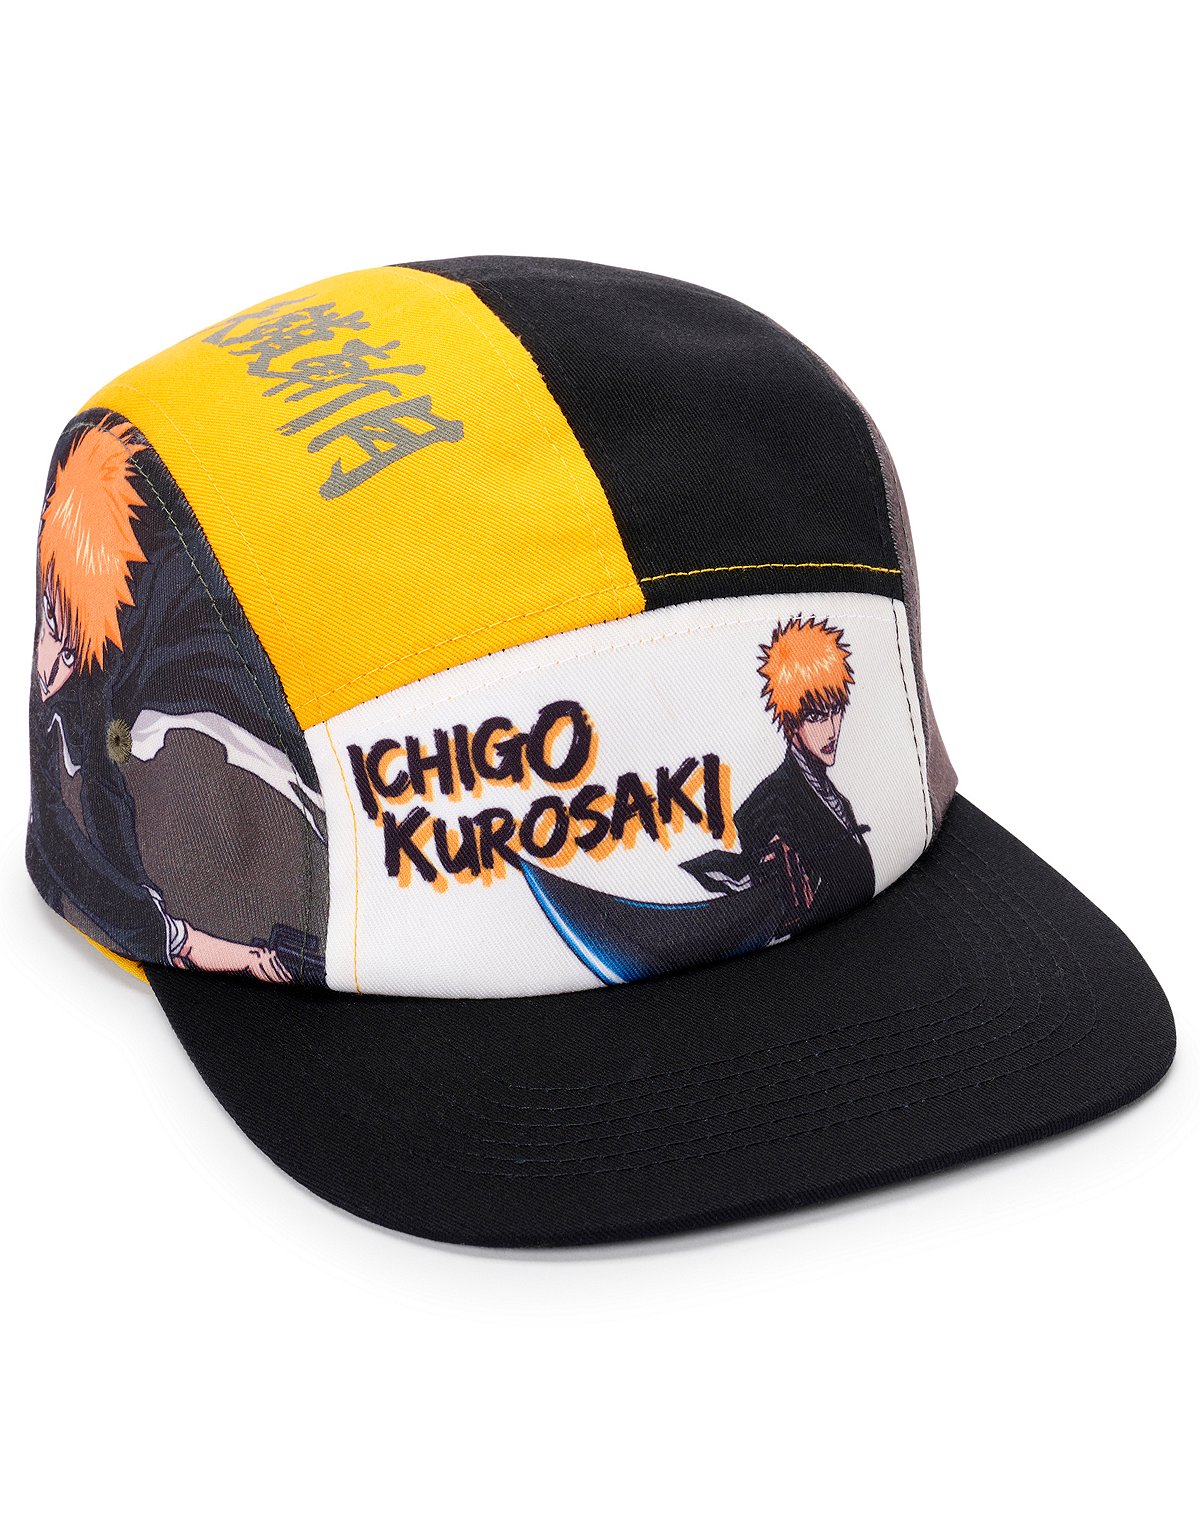 Ichigo Kurosaki Camper Hat